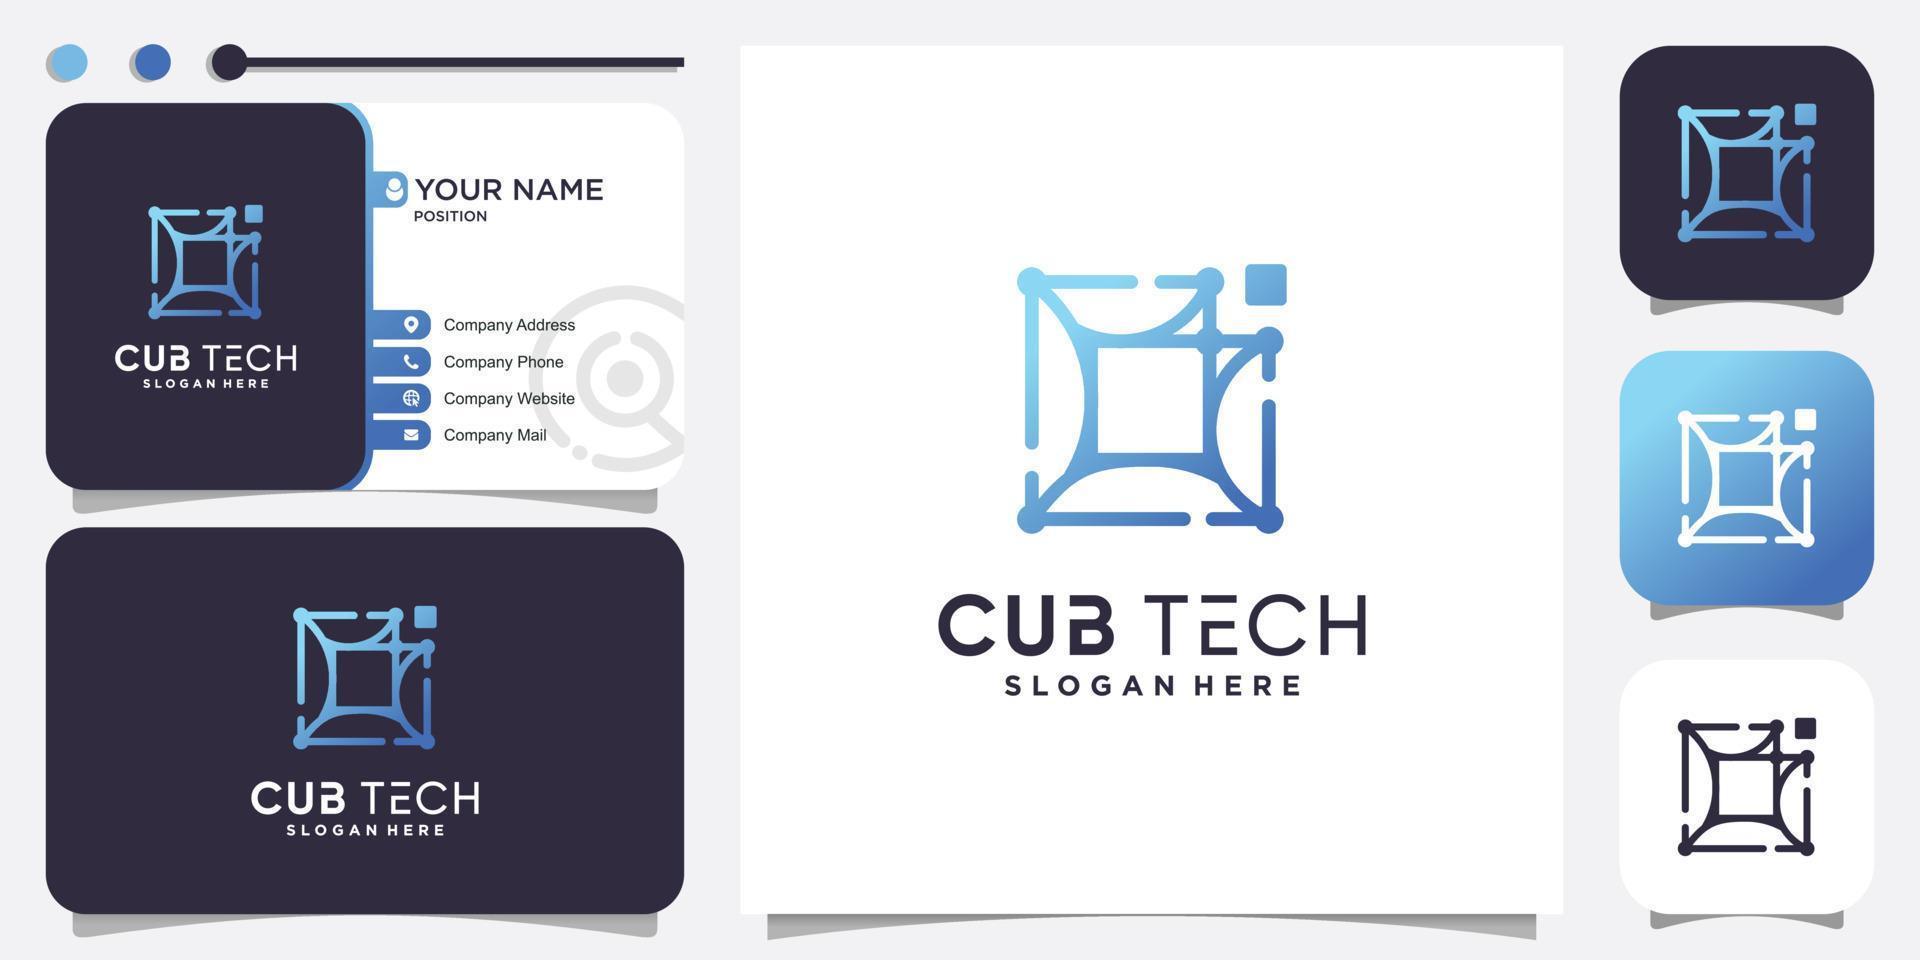 Cube tech logo with modern abstract concept Premium Vector